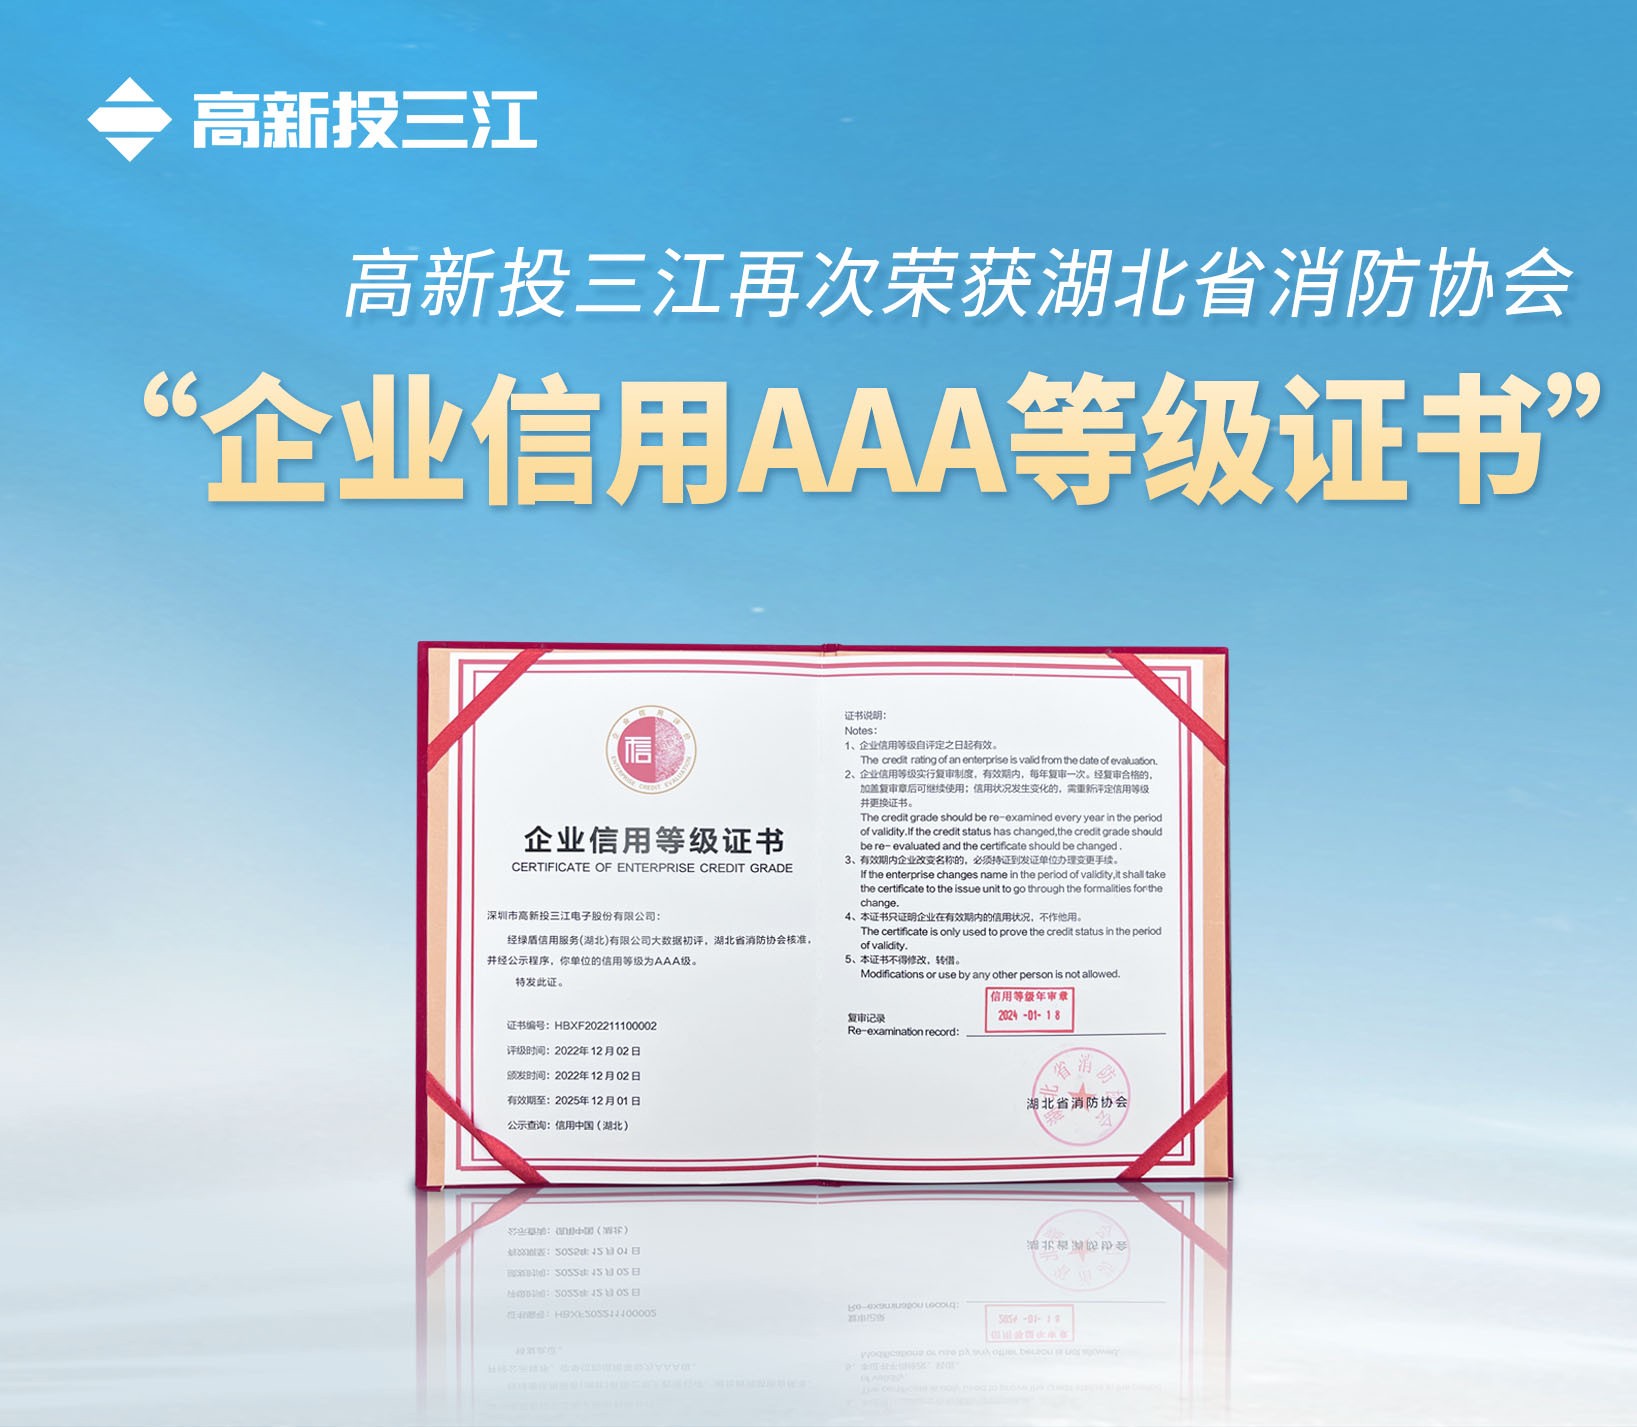 金莎娱乐官网最新网站再次荣获湖北省消防协会 “企业信用AAA等级证书”